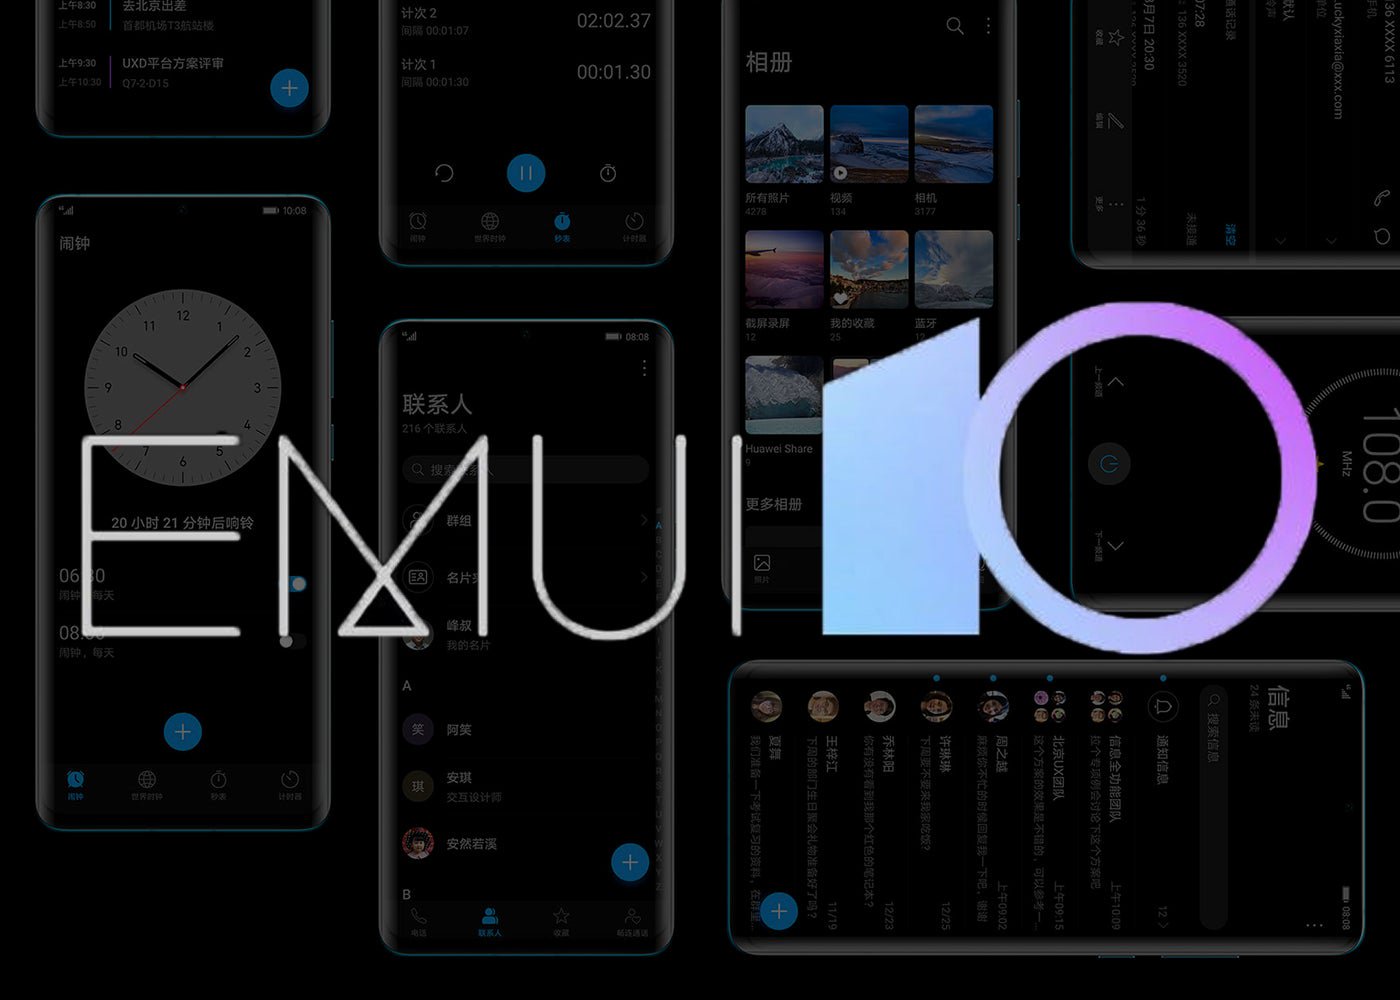 رسمي: هذه هي هواتف Huawei و Honor التي ستقوم بالترقية إلى EMUI 10 مع Android Q